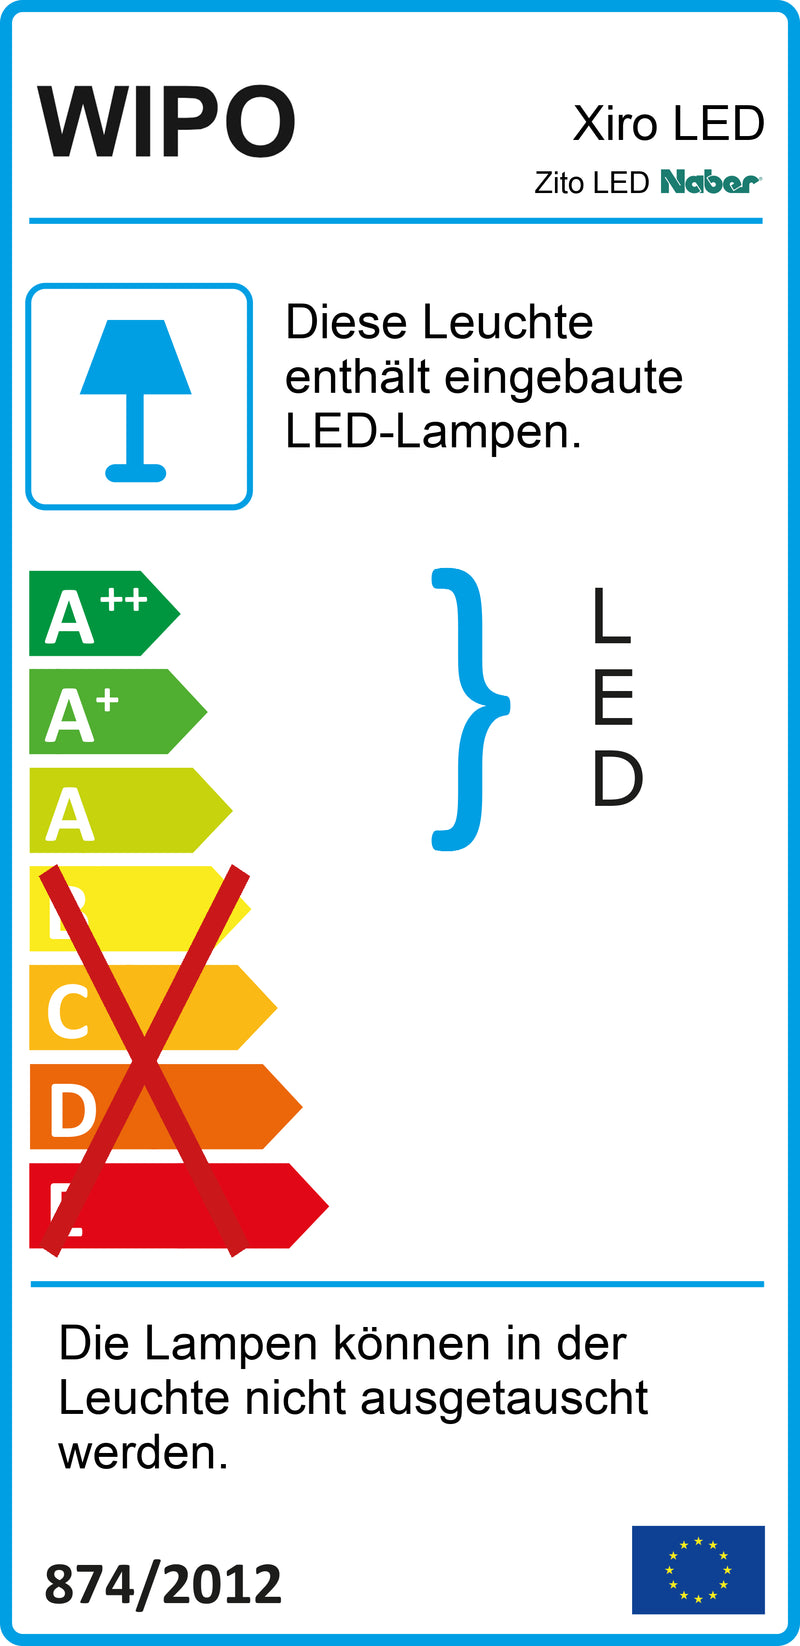 E-Label zu Zeichnung zu Zito LED als Variante L 1200 mm, 17 W, edelstahlfarbig von Naber GmbH in der Kategorie Lichttechnik in Österreich auf conceptshop.at